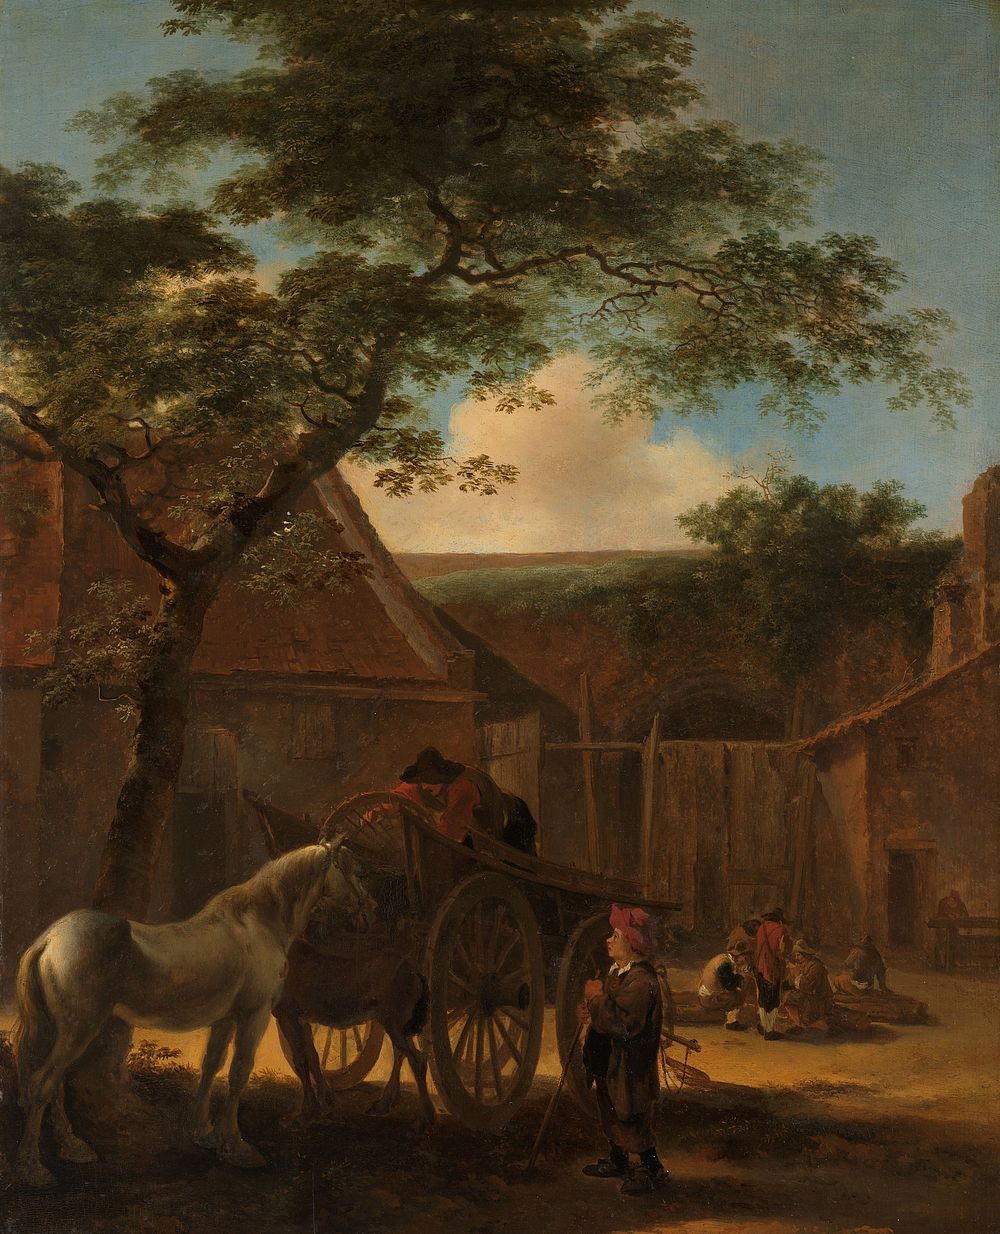 Farmyard (c. 1645 - c. 1650) by Jan Both